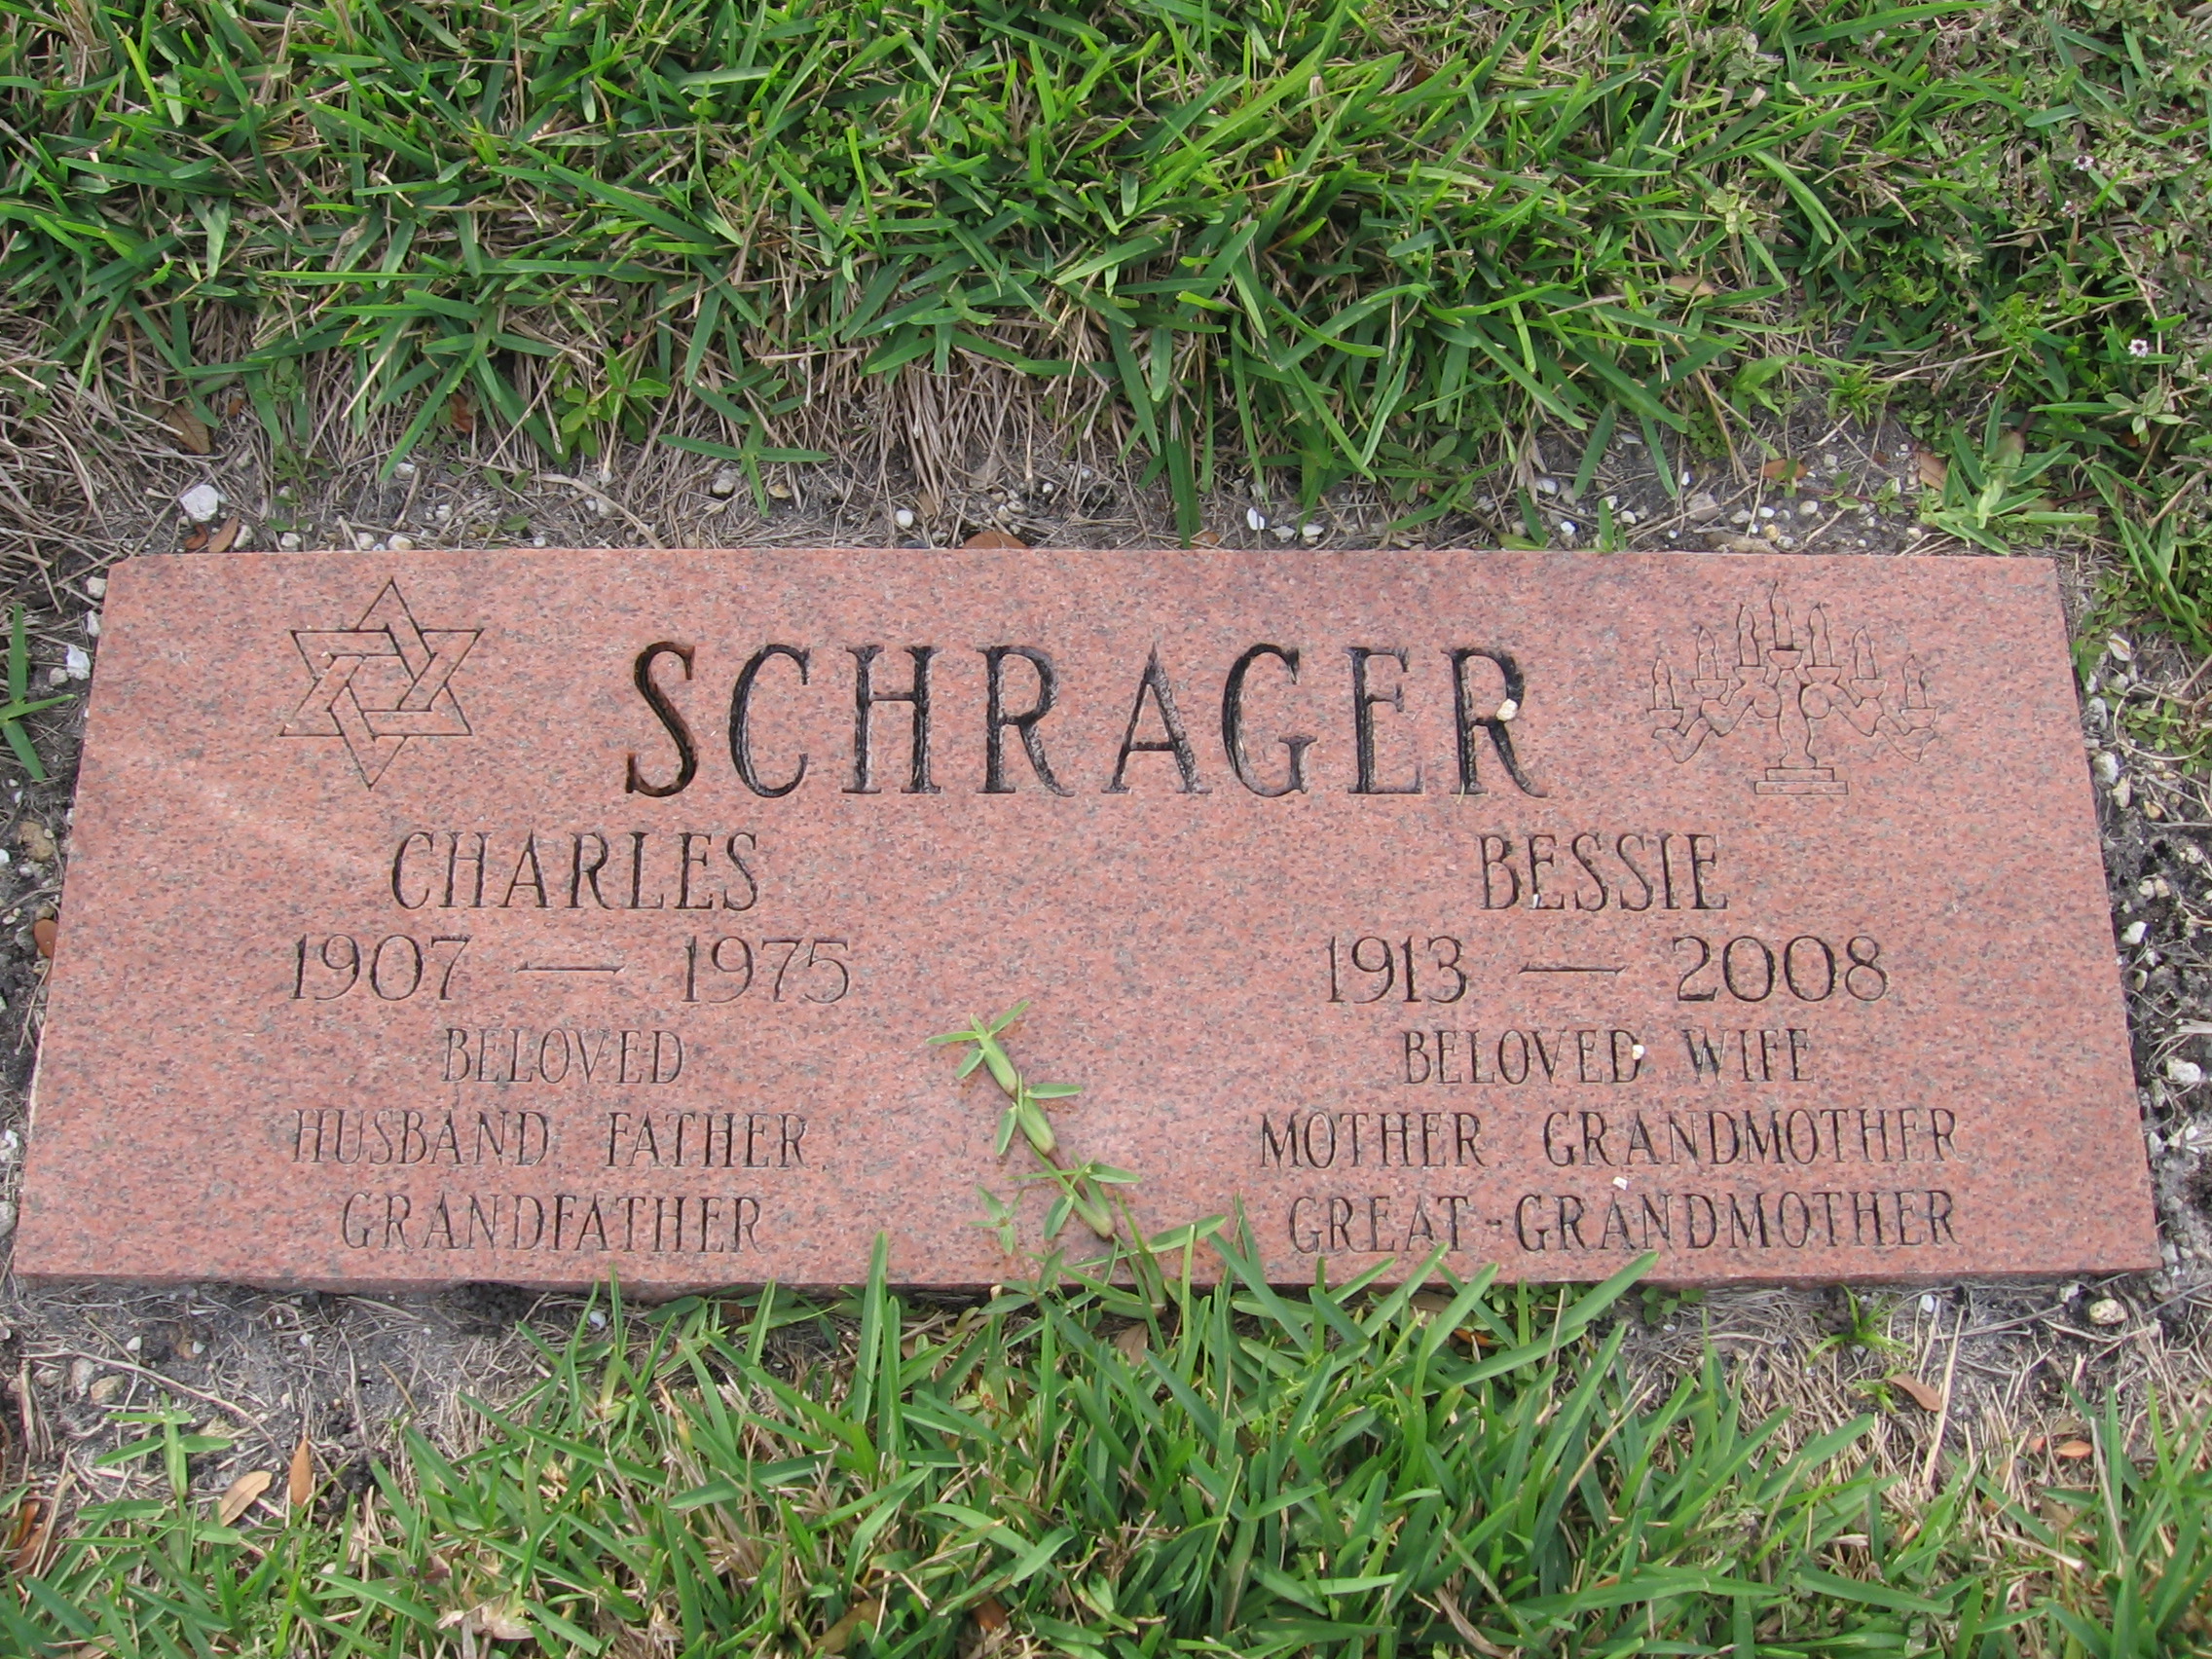 Charles Schrager